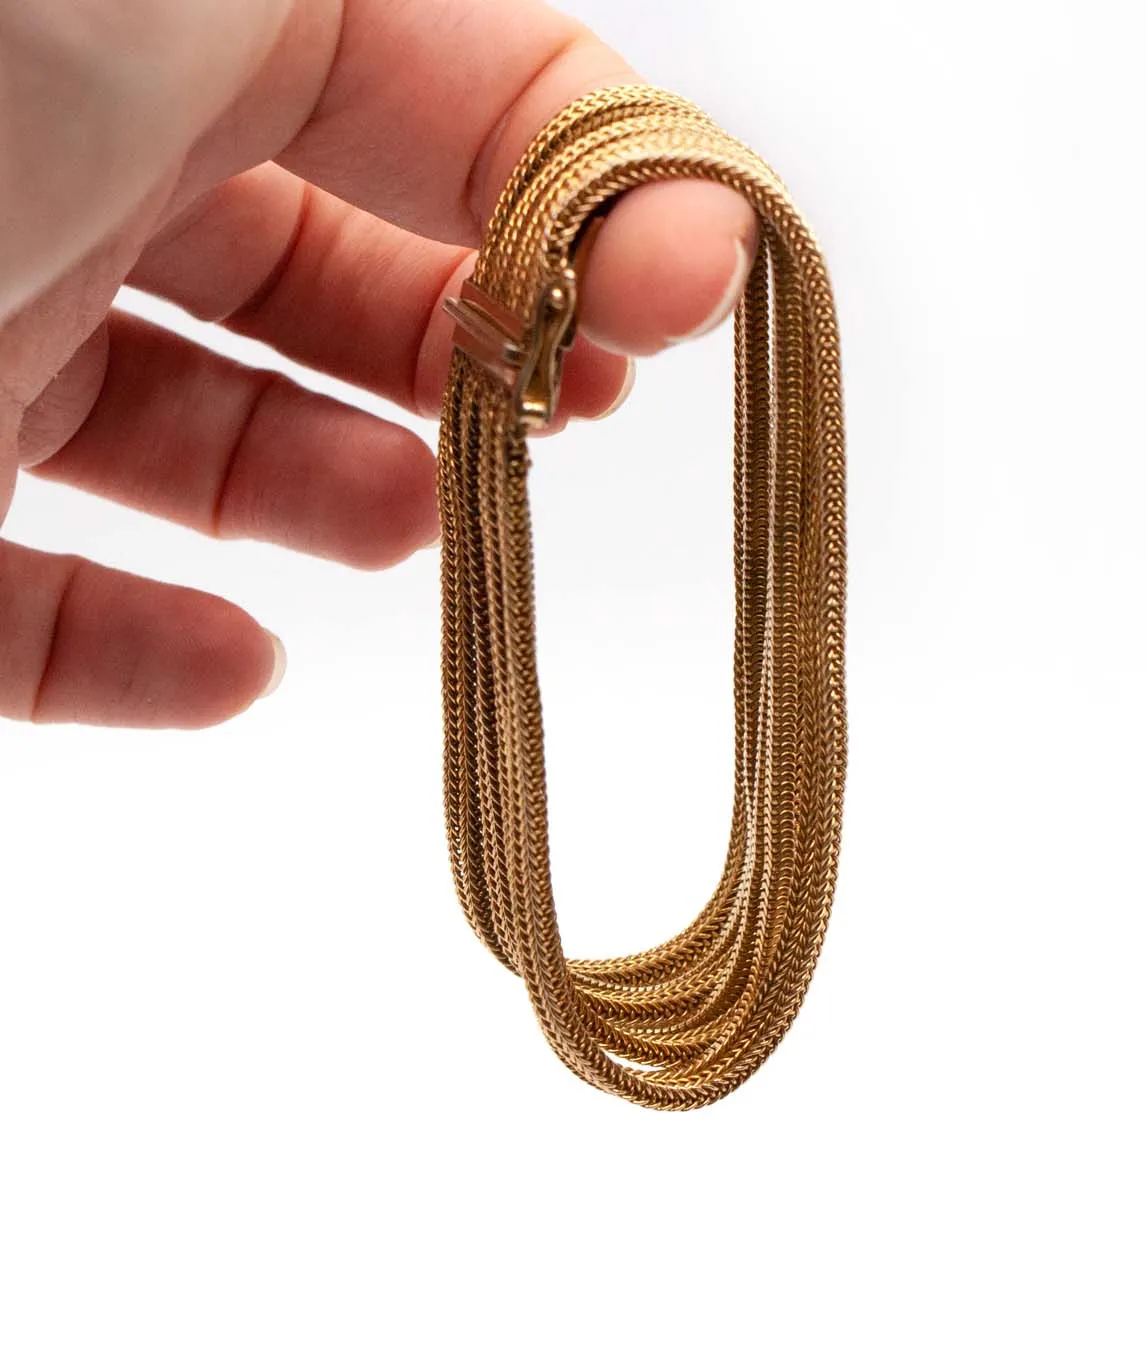 Grosse multi-chain woven gold plated bracelet held on finger